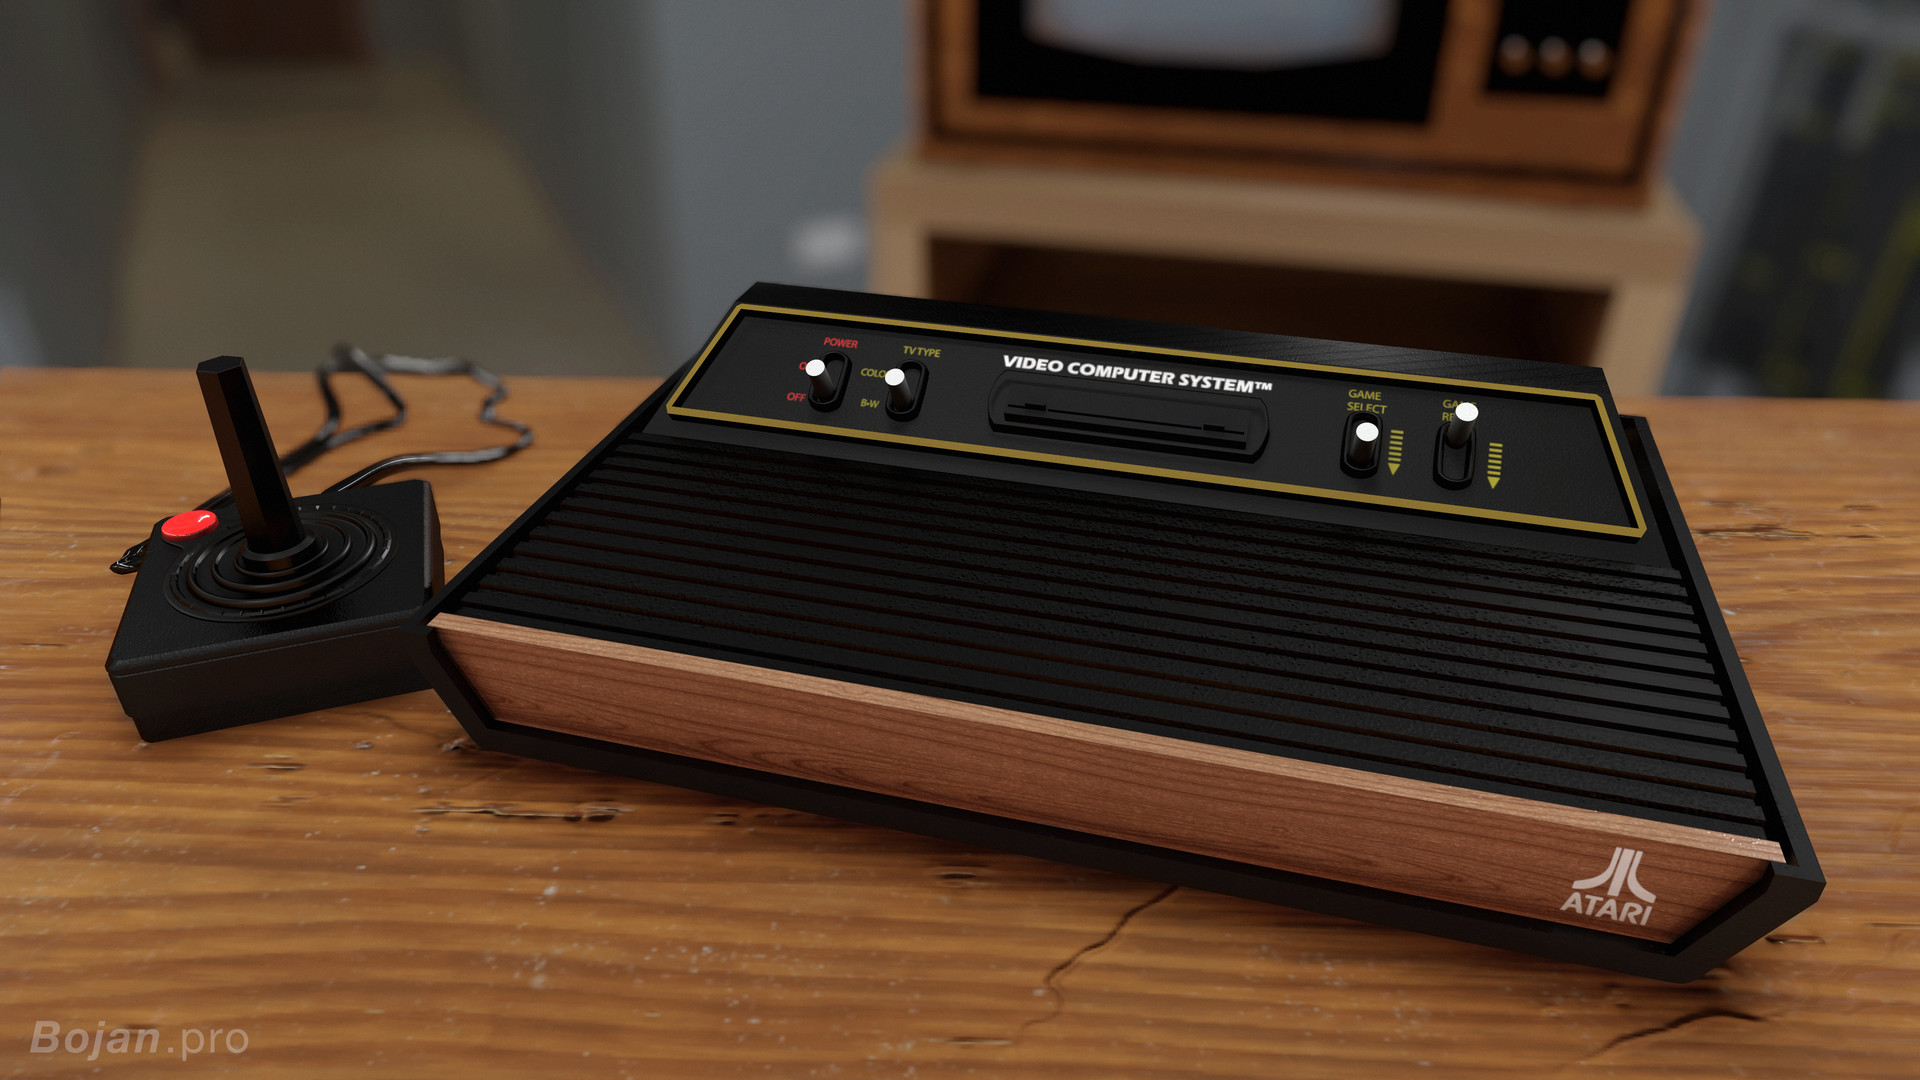 Первая консольная игра. Атари 2600. Консоли Atari 2600. Атари приставка. Игровая консоль Атари.